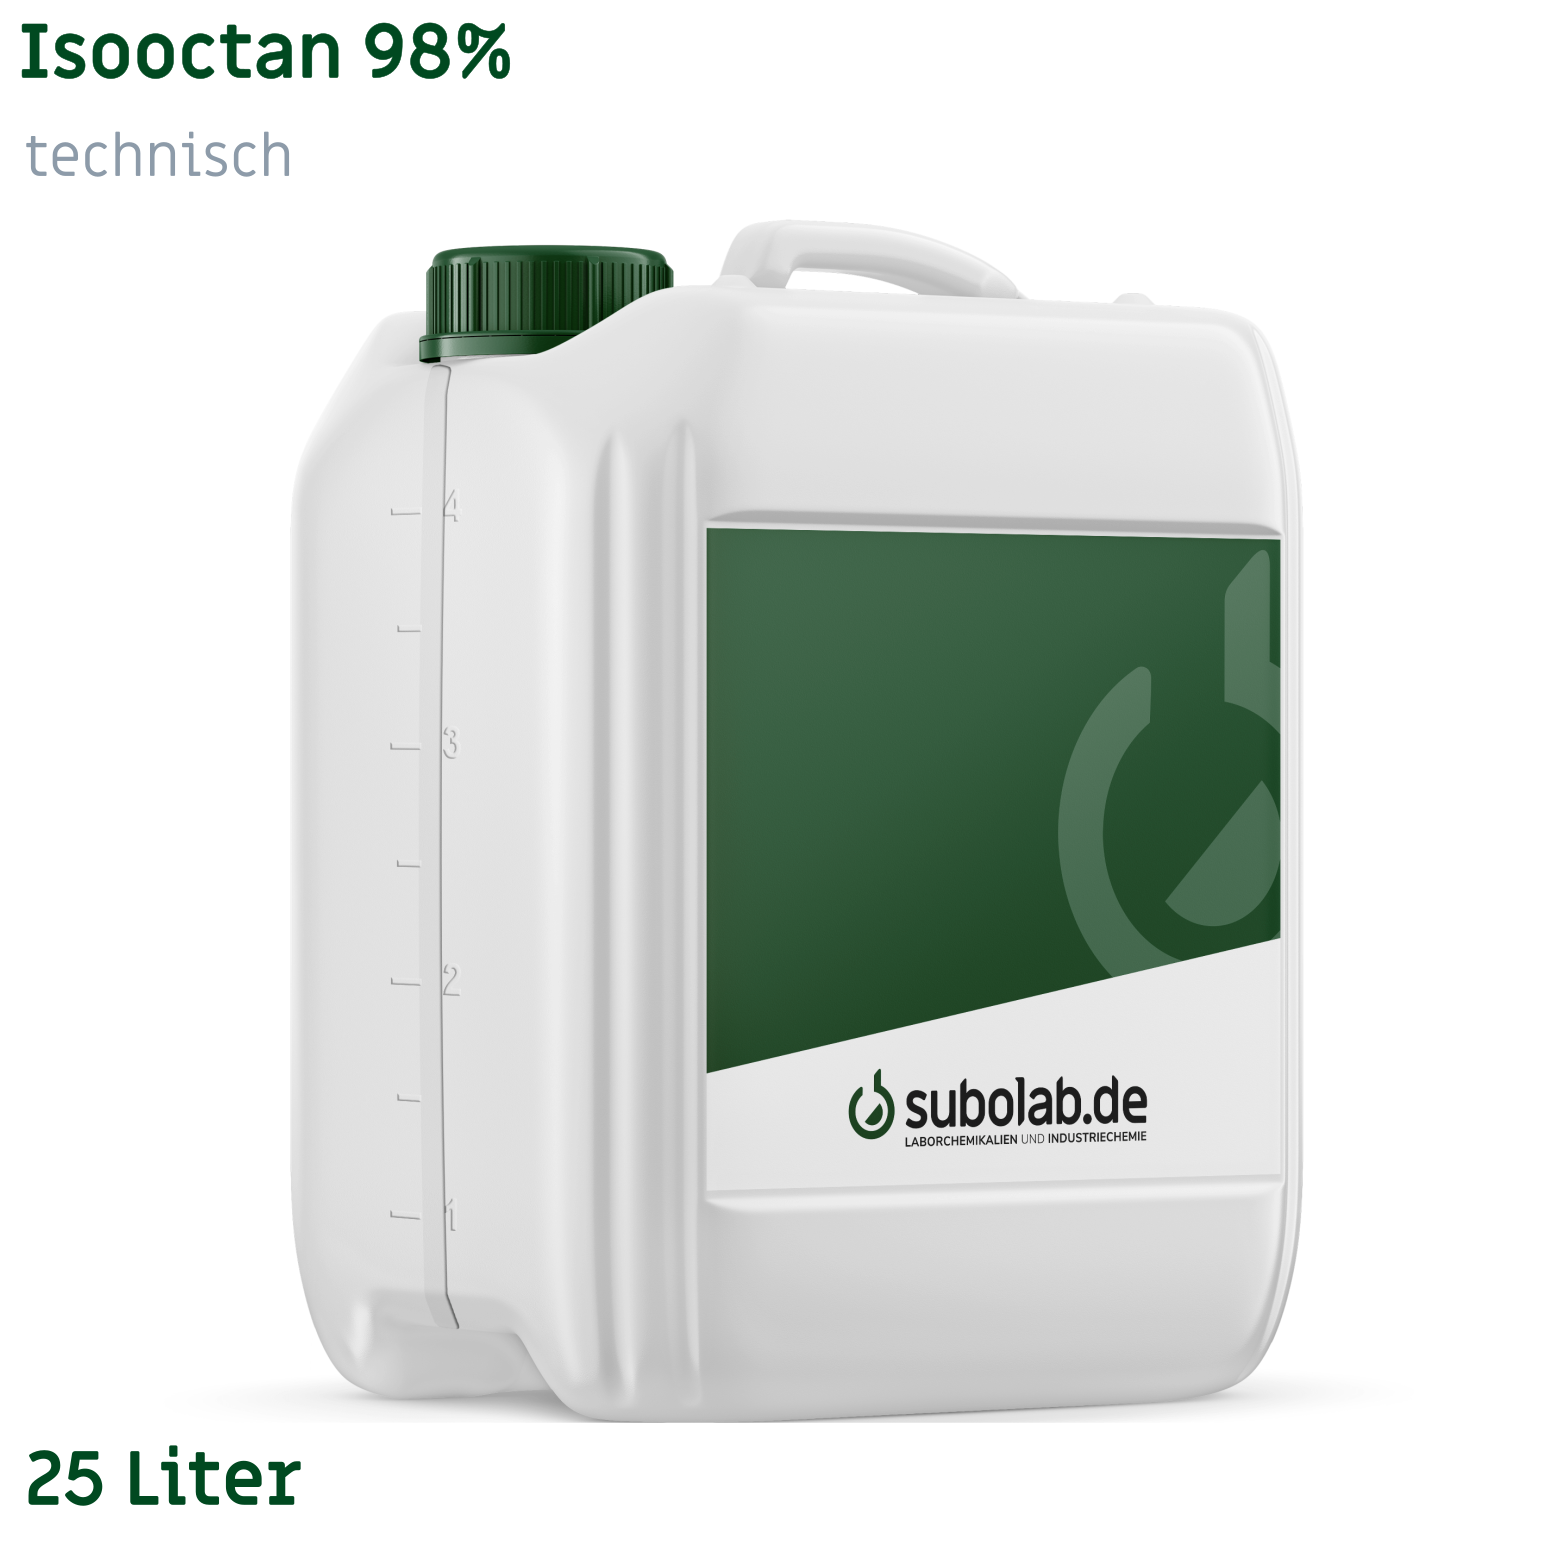 Bild von Isooctan 98% technisch (25 Liter)